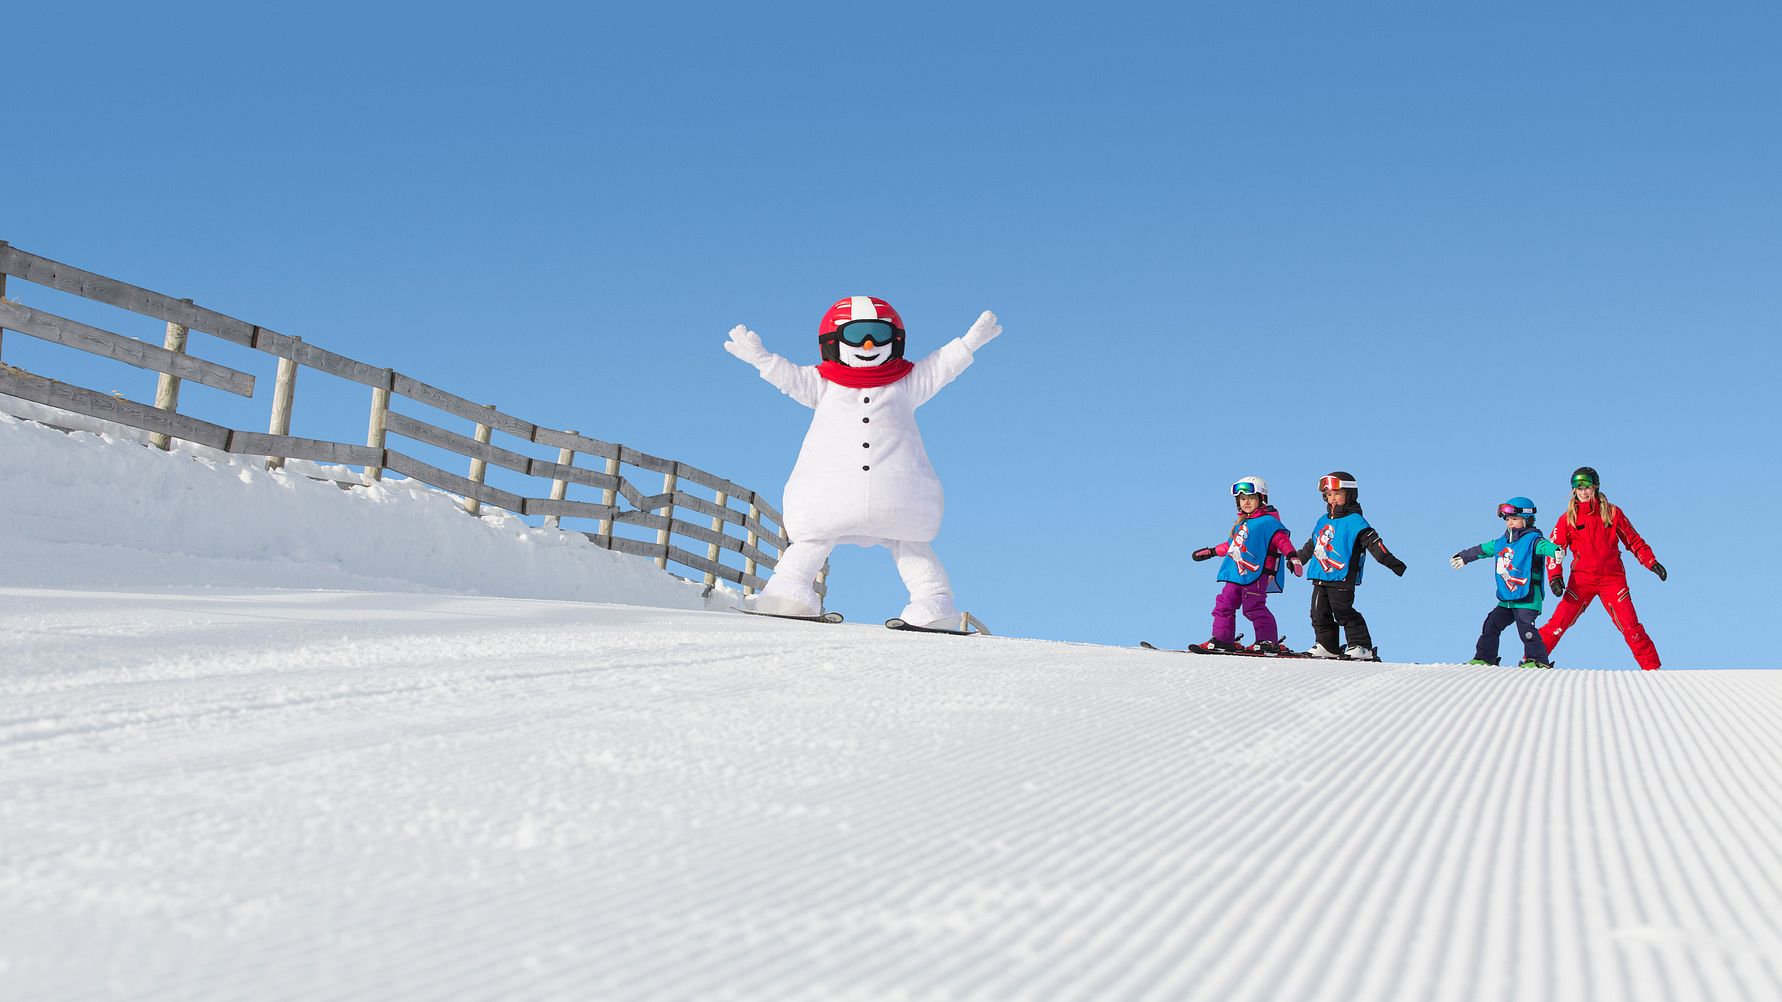 Andre eventyr for barn og ungdom blant SkiStars vinternyheter